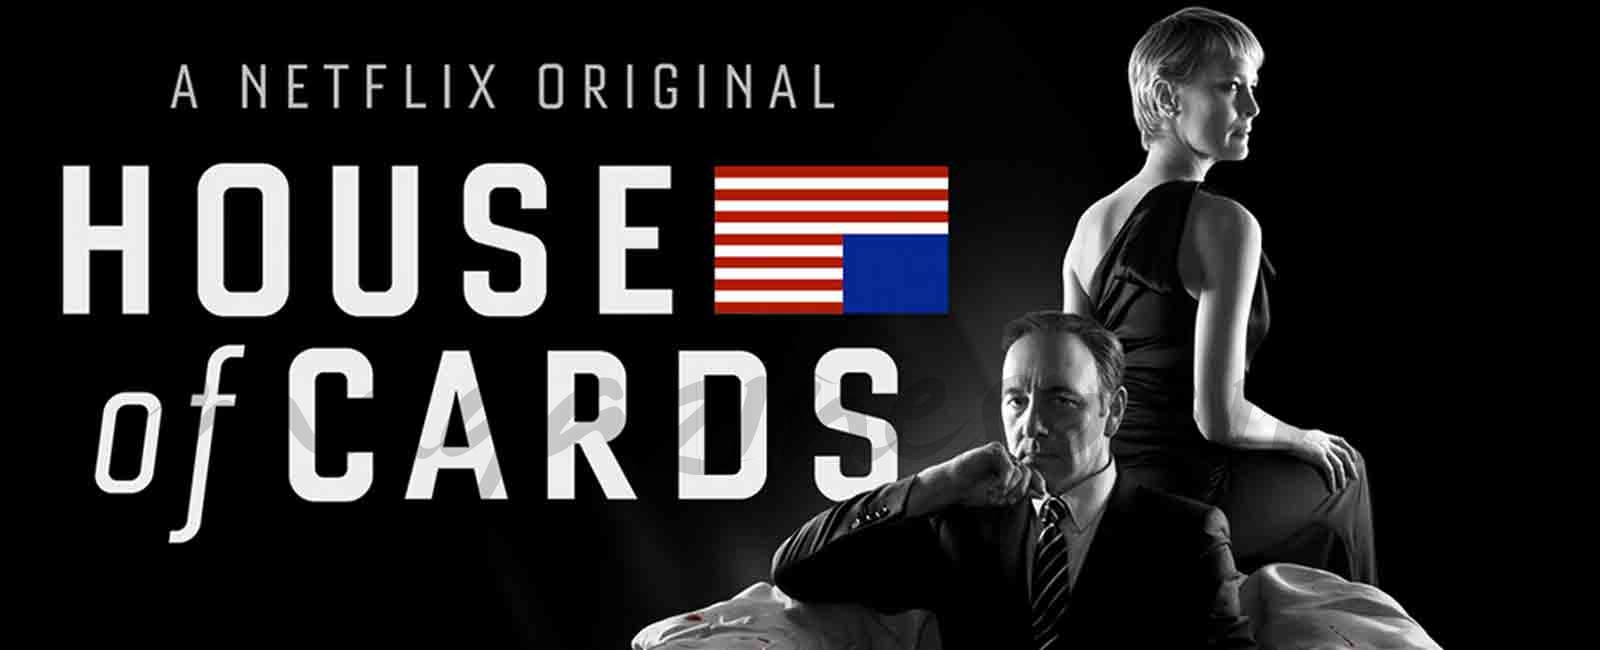 Netflix suspende indefinidamente el rodaje de “House of Cards”